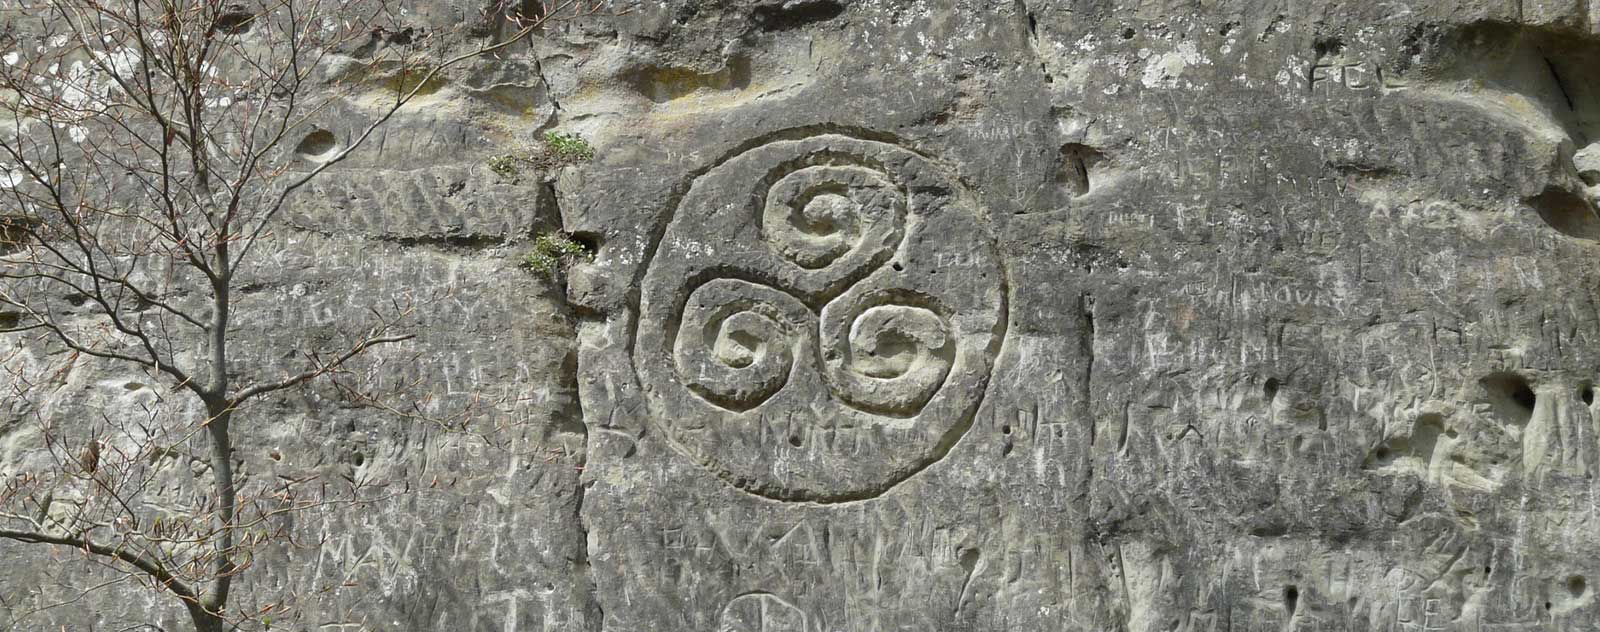 Stone engraving triskel